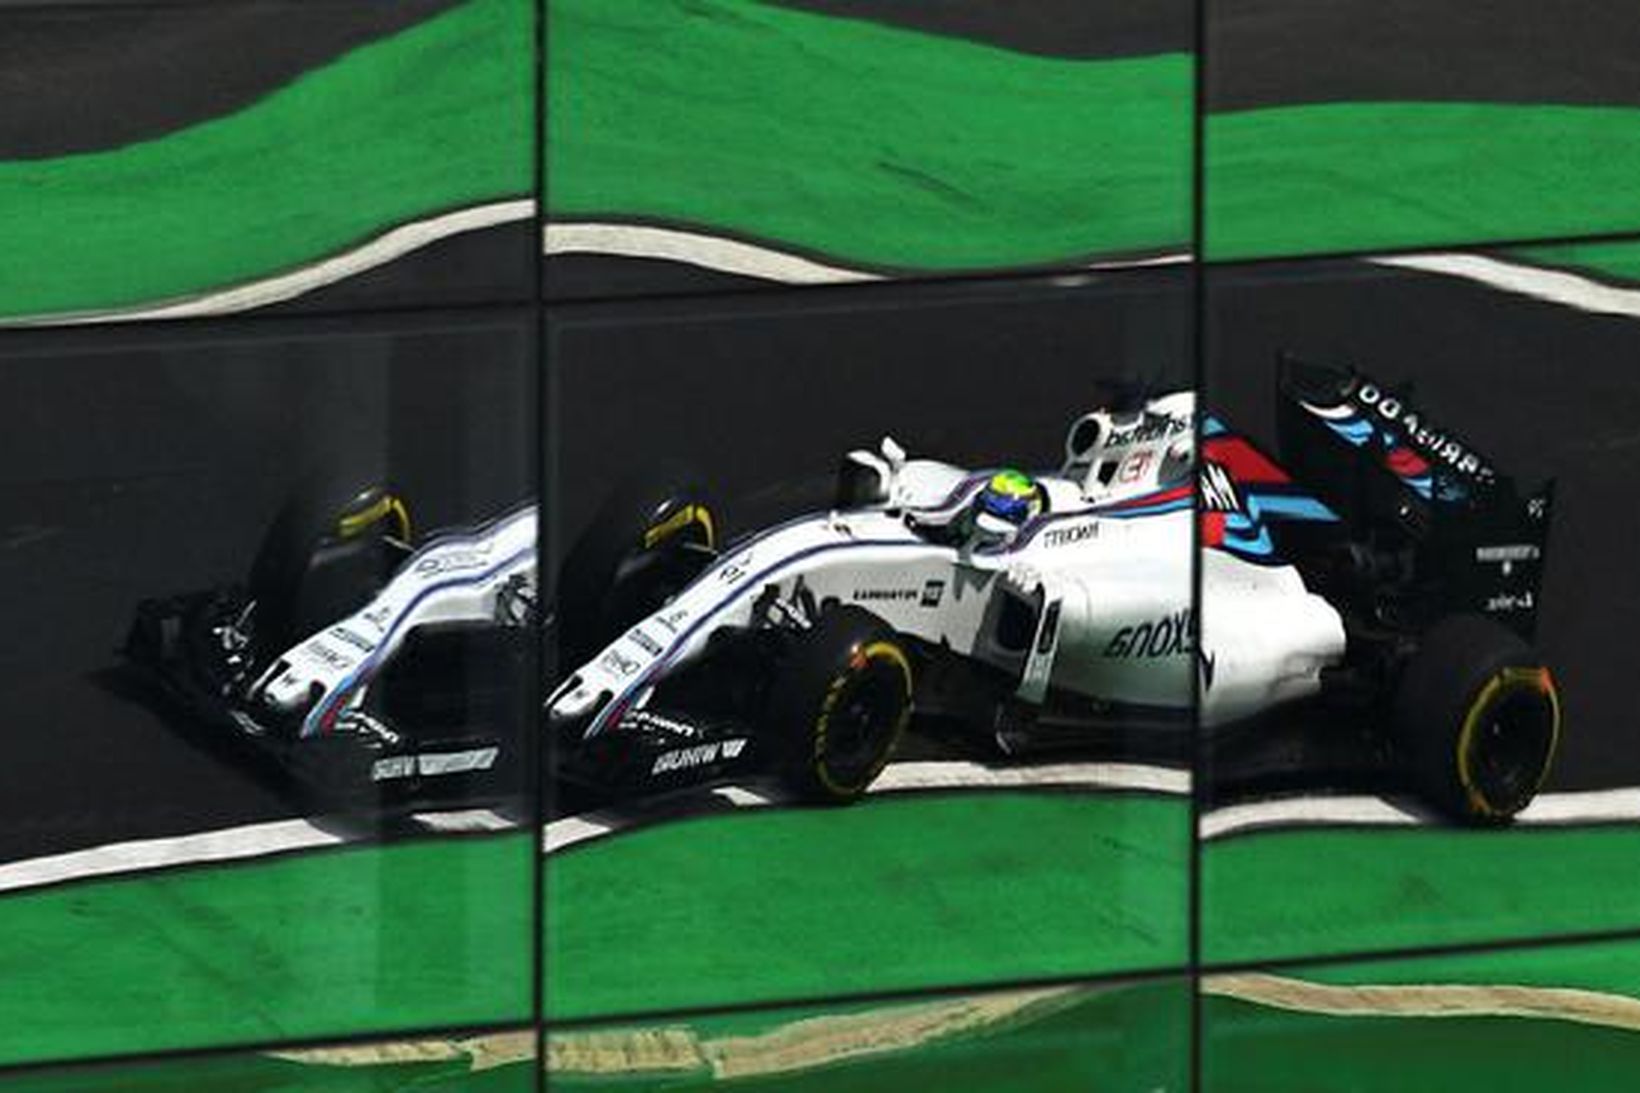 Bíll Felipe Massa speglast í glervegg aðalstúkunnar í Sao Paulo.